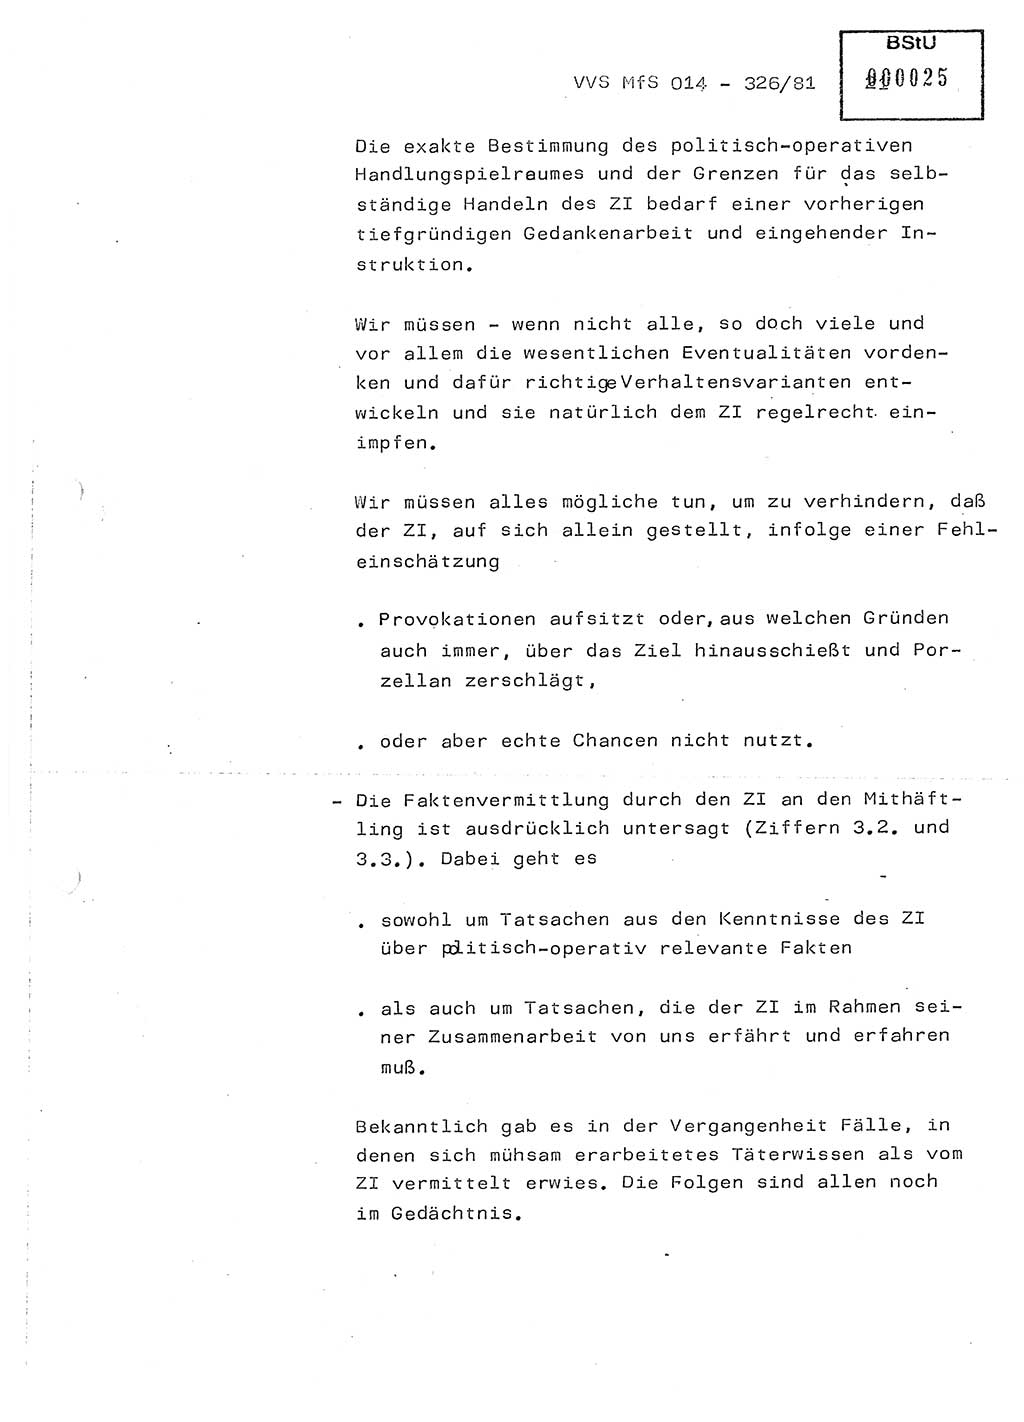 Thesen zum Einführungsvortrag für die Schulung zur Richtlinie Nr. 2/81 [zur Arbeit mit Zelleninformatoren (ZI)] des Genossen Minister (Generaloberst Erich Mielke), Ministerium für Staatssicherheit (MfS) [Deutsche Demokratische Republik (DDR)], Hauptabteilung (HA) Ⅸ, Vertrauliche Verschlußsache (VVS) 014-326/81, Berlin 1981, Seite 21 (Th. Sch. RL 2/81 MfS DDR HA Ⅸ VVS 014-326/81 1981, S. 21)